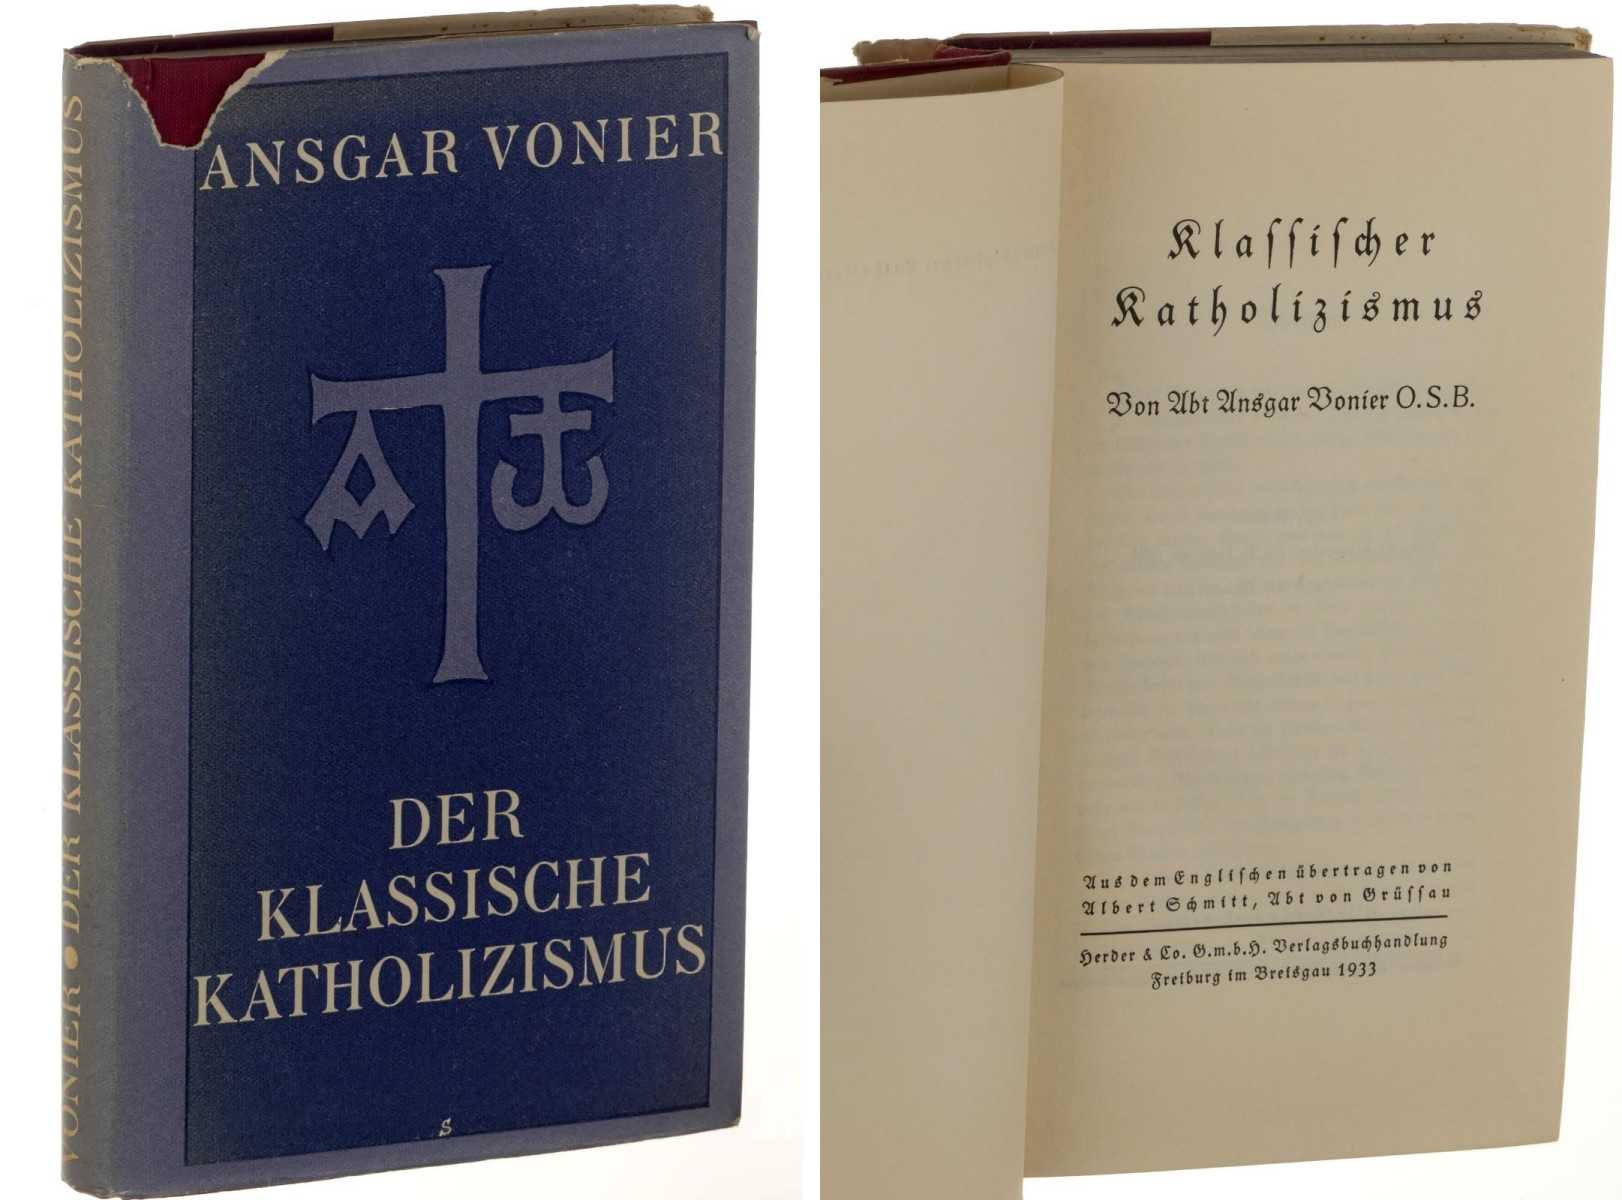 Vonier, Ansgar:  Klassischer Katholizismus. [Der klassische ...]. Aus d. Engl. übertr. von Albert Schmitt. 